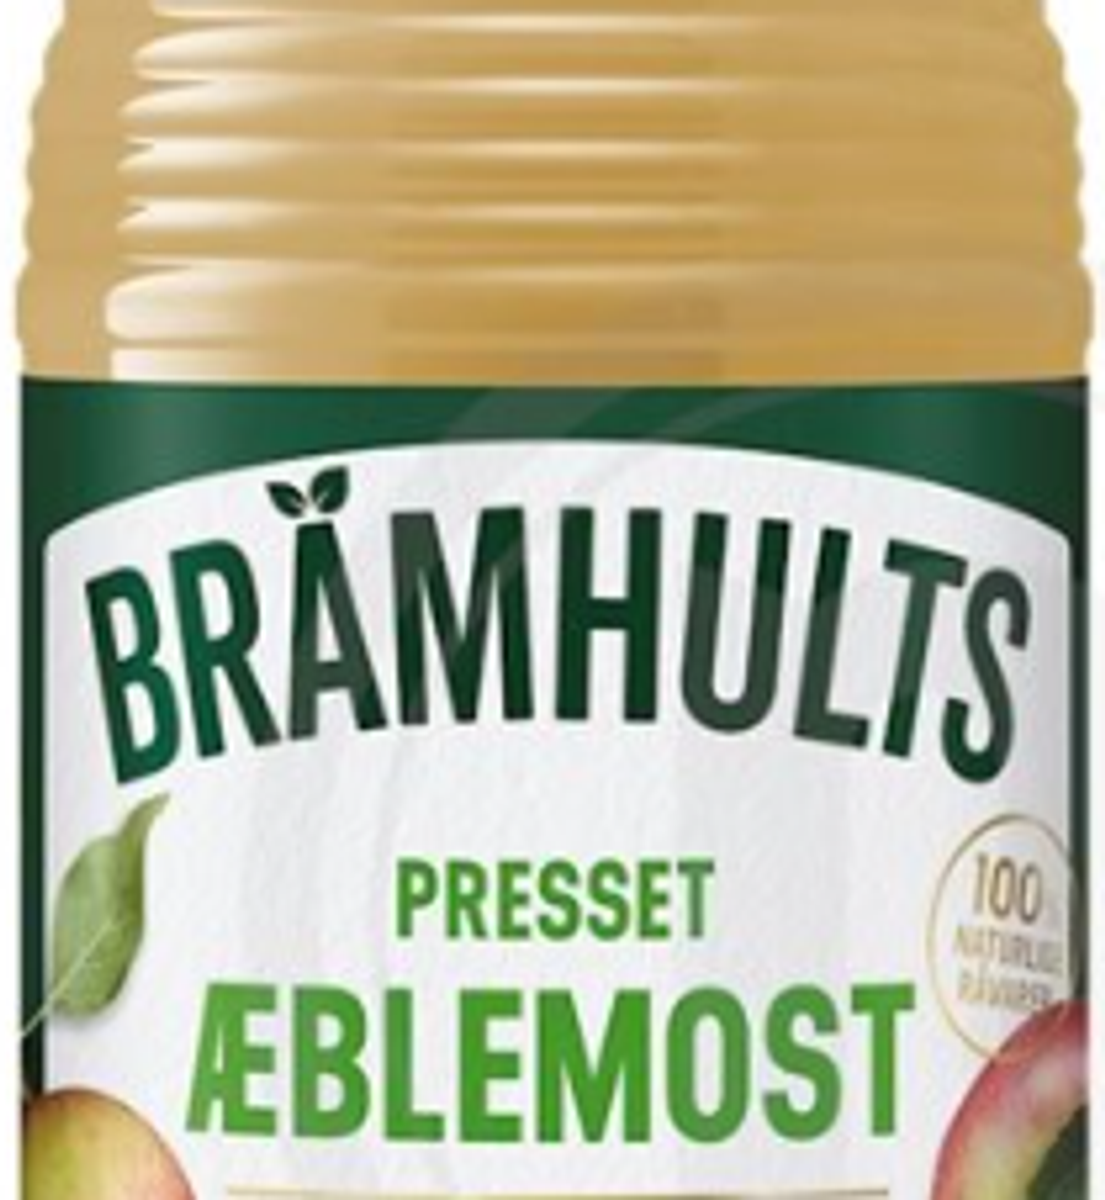 Der er tale om Brämhults Presset Æblemost.